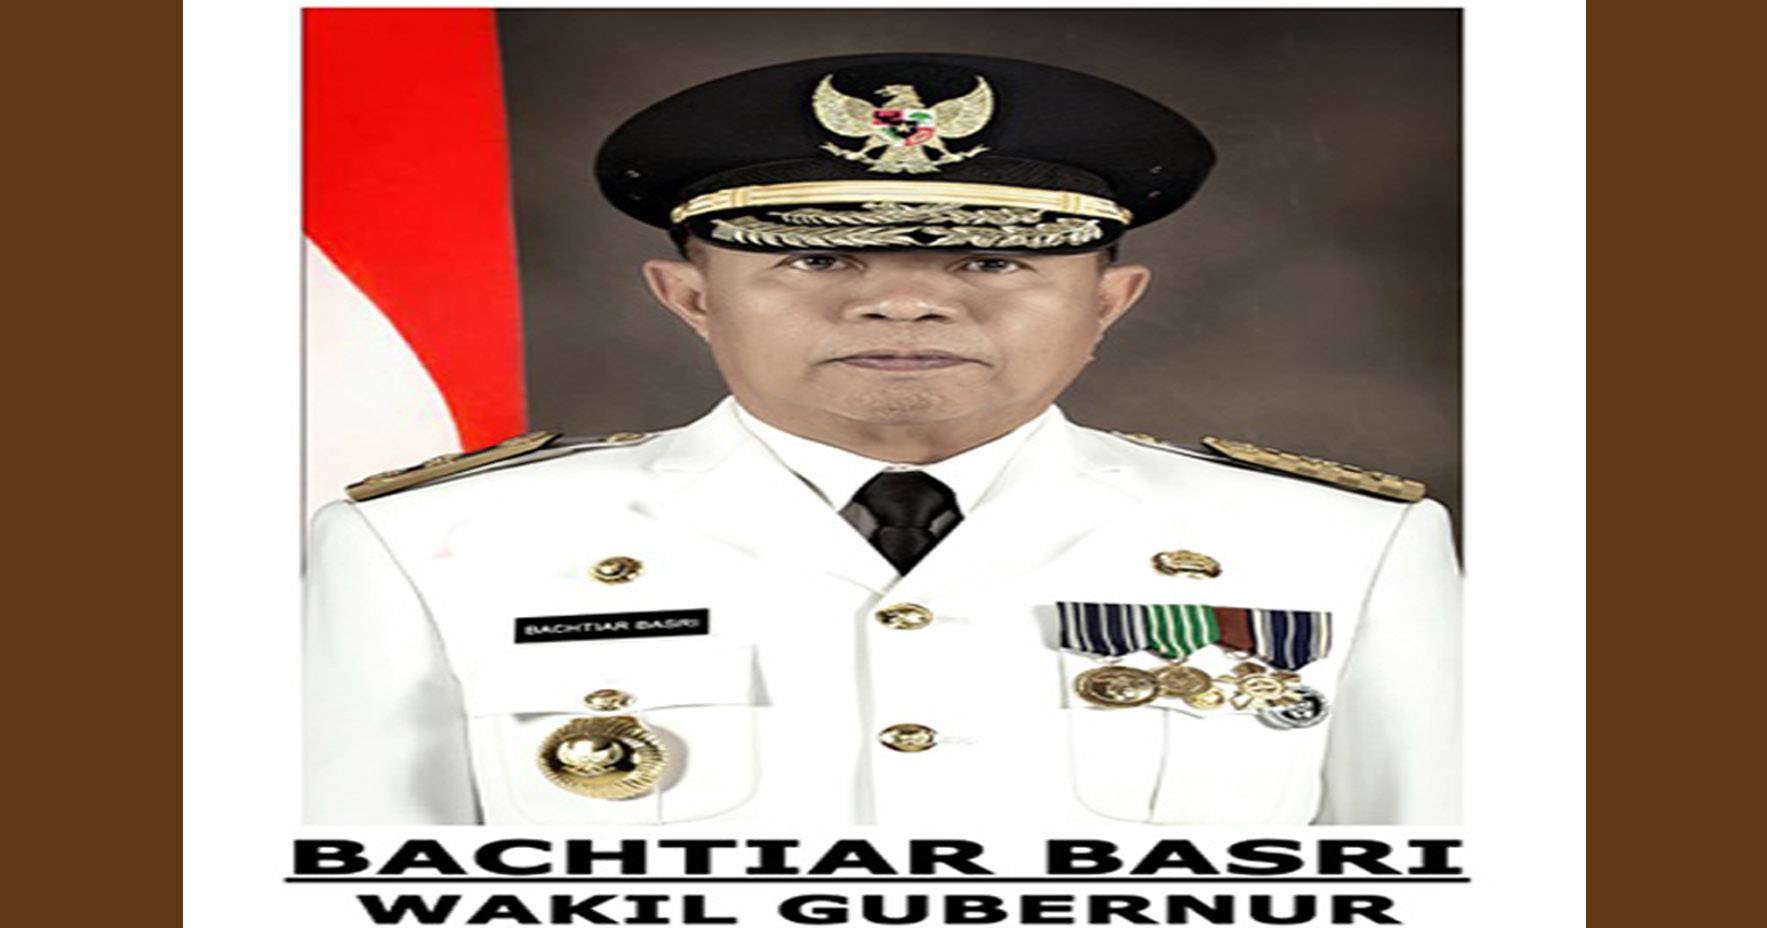 Wakil Gubernur Lampung, Bachtiar Basri